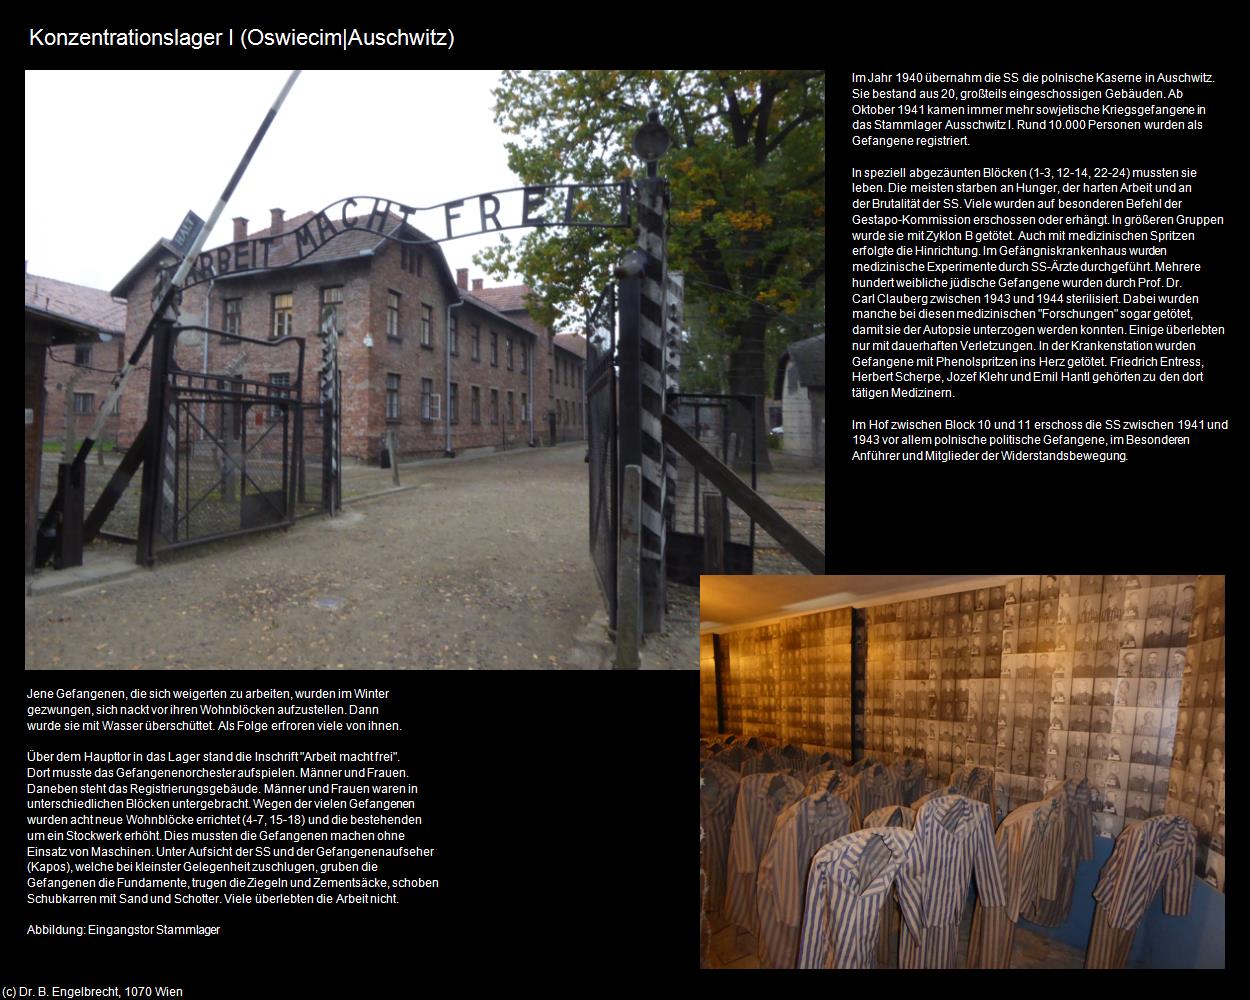 Konzentrationslager I (Oswiecim|Auschwitz) in POLEN-Galizien